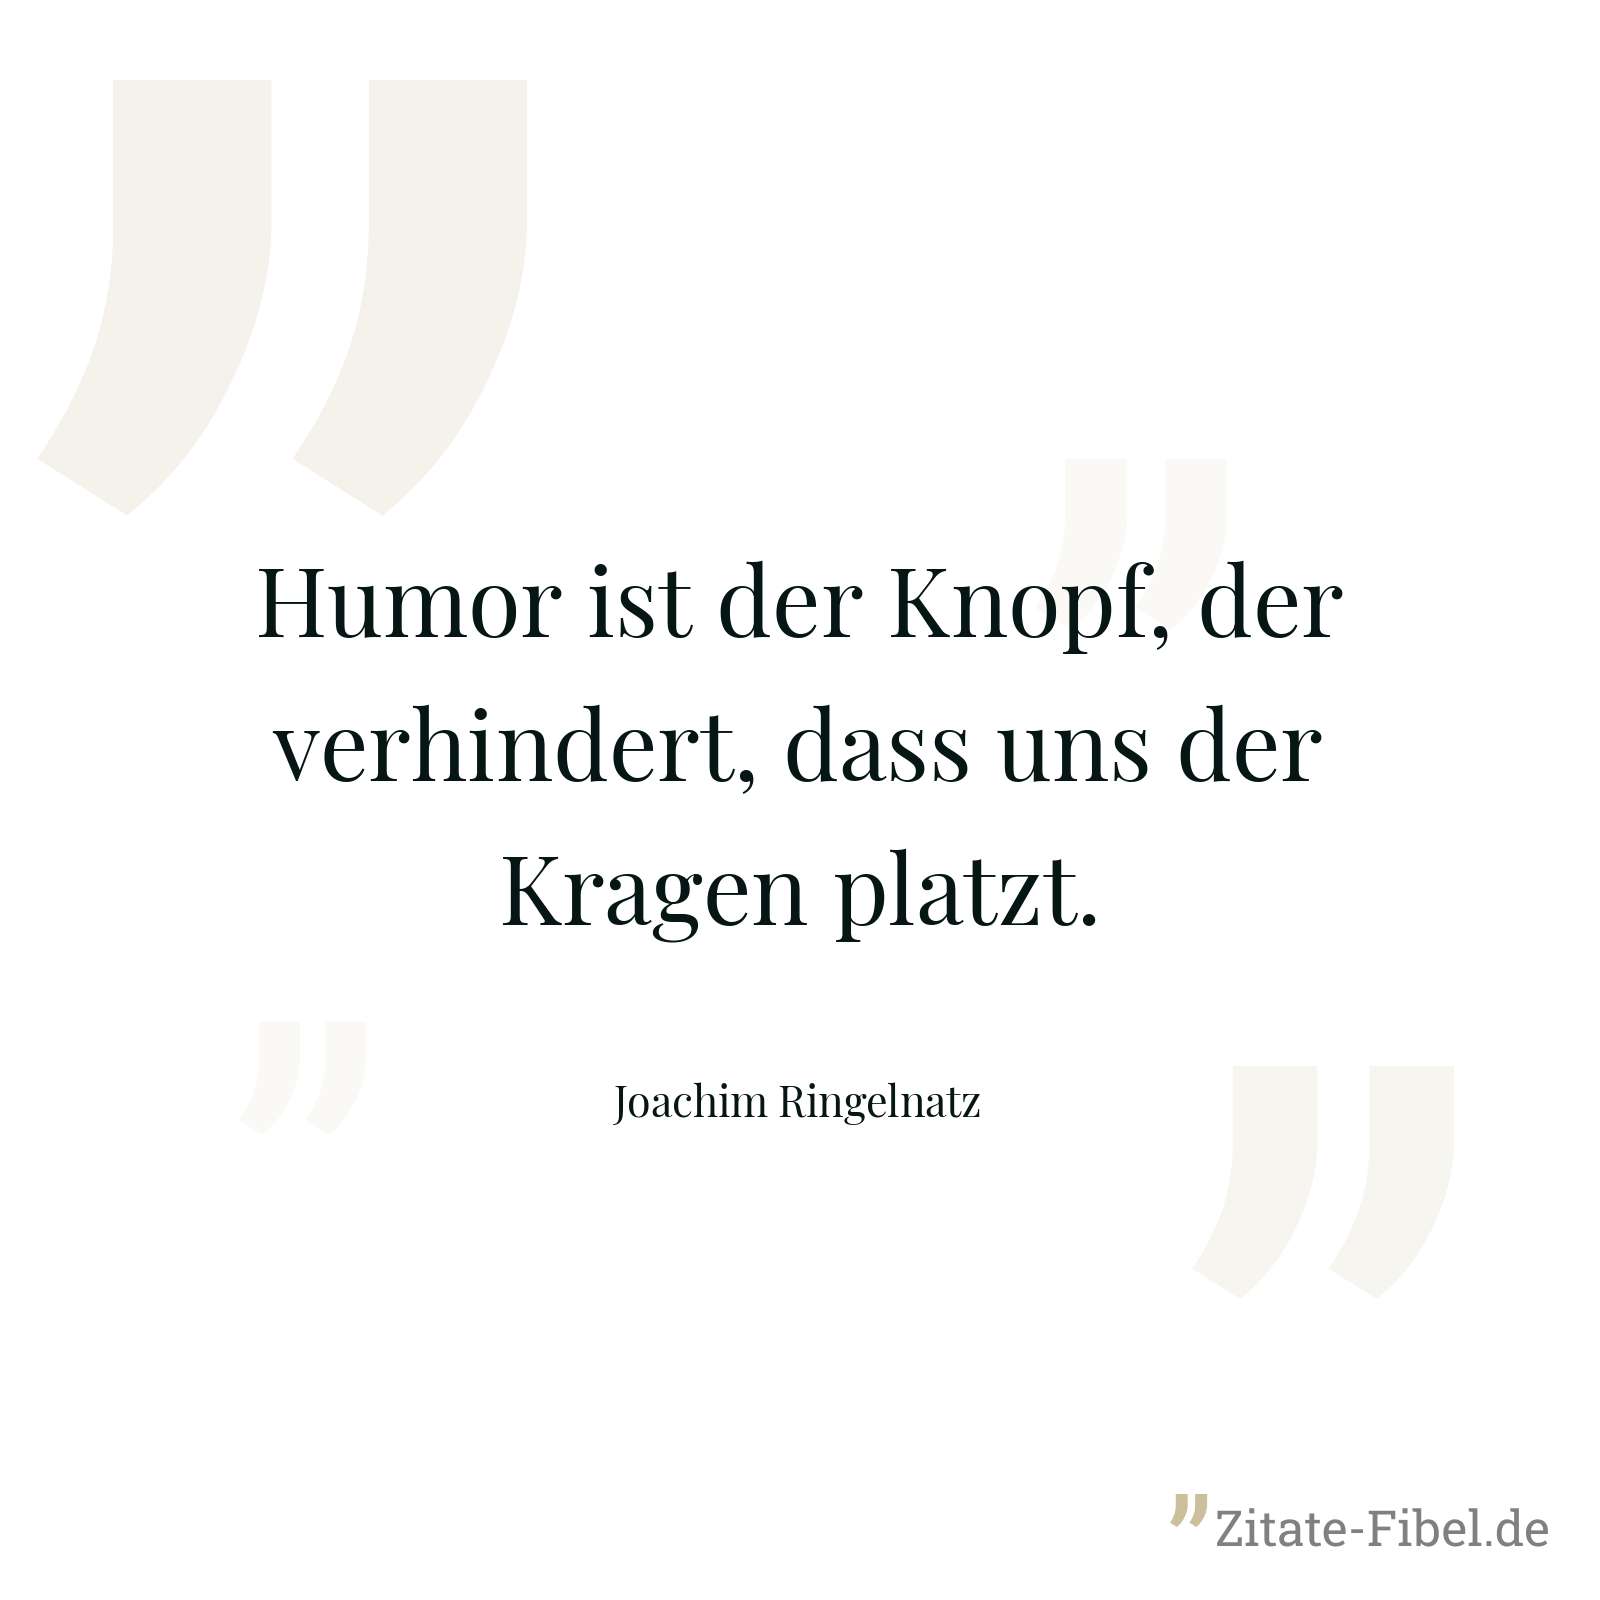 Humor ist der Knopf, der verhindert, dass uns der Kragen platzt. - Joachim Ringelnatz